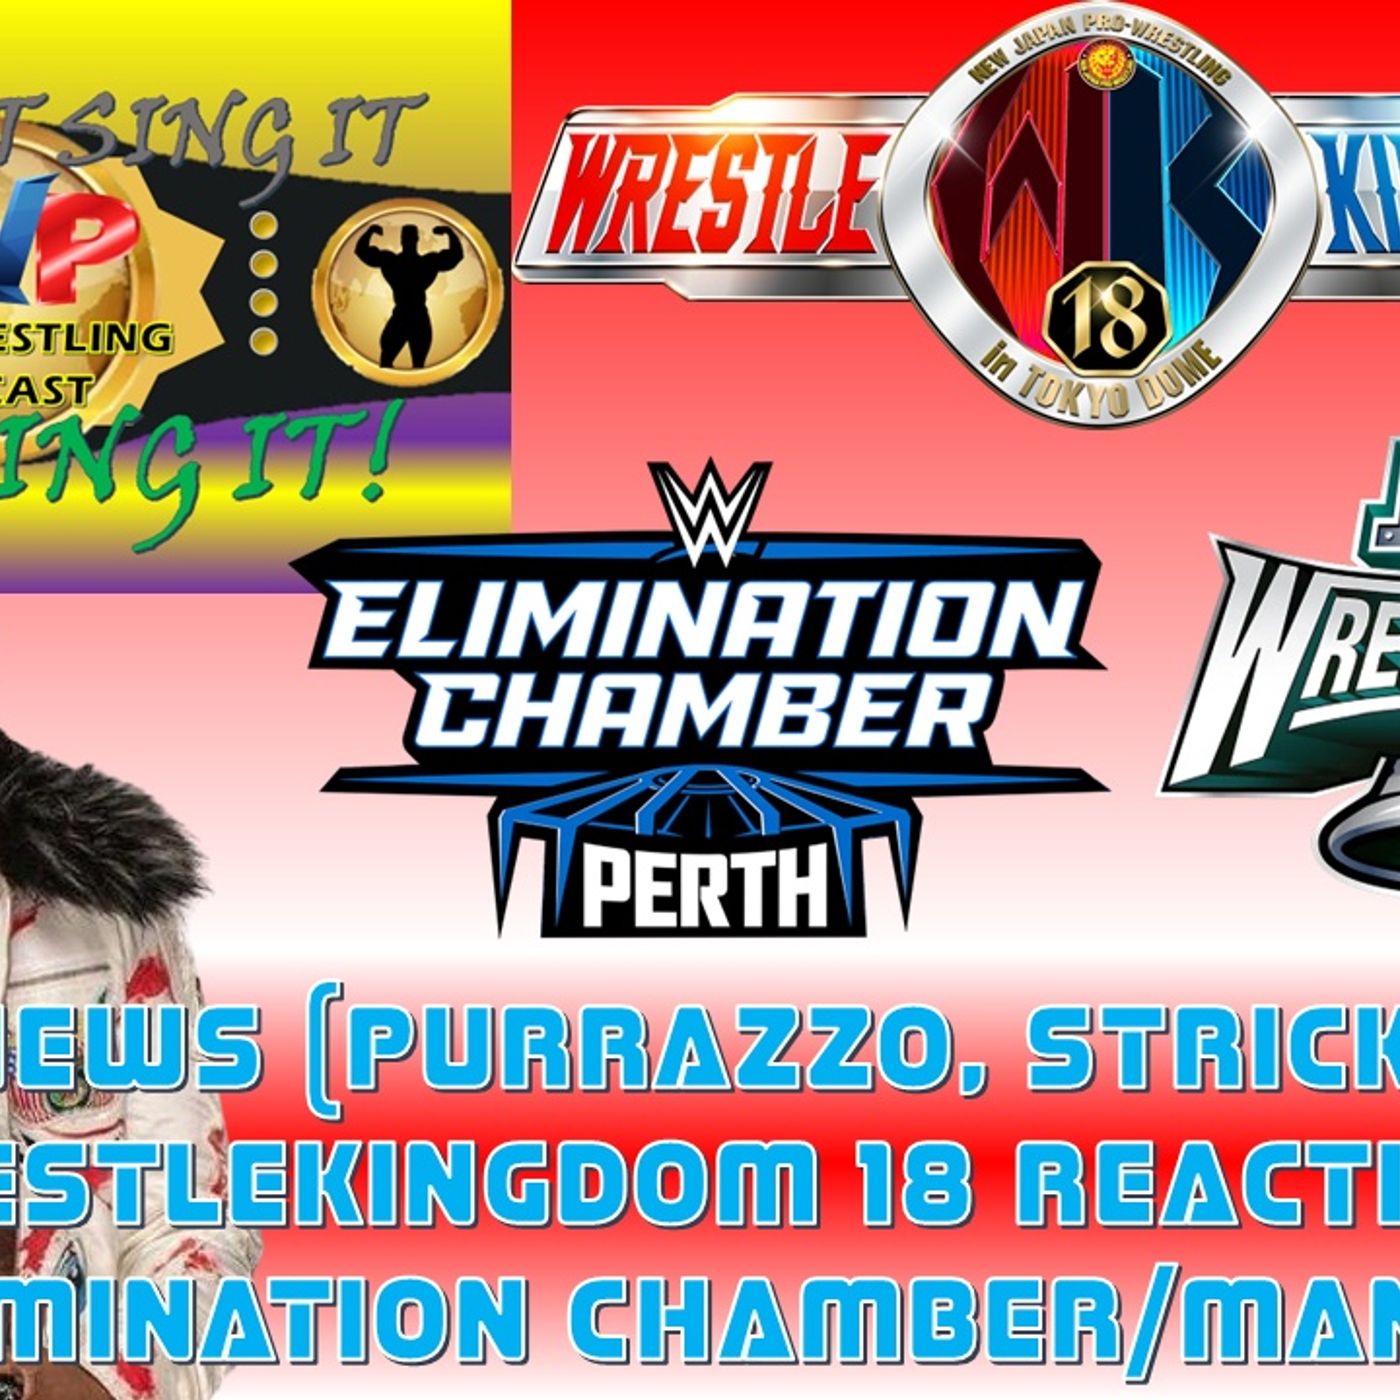 WWE Chamber / Mania News - AEW News - NJPW WrestleKingdom 18